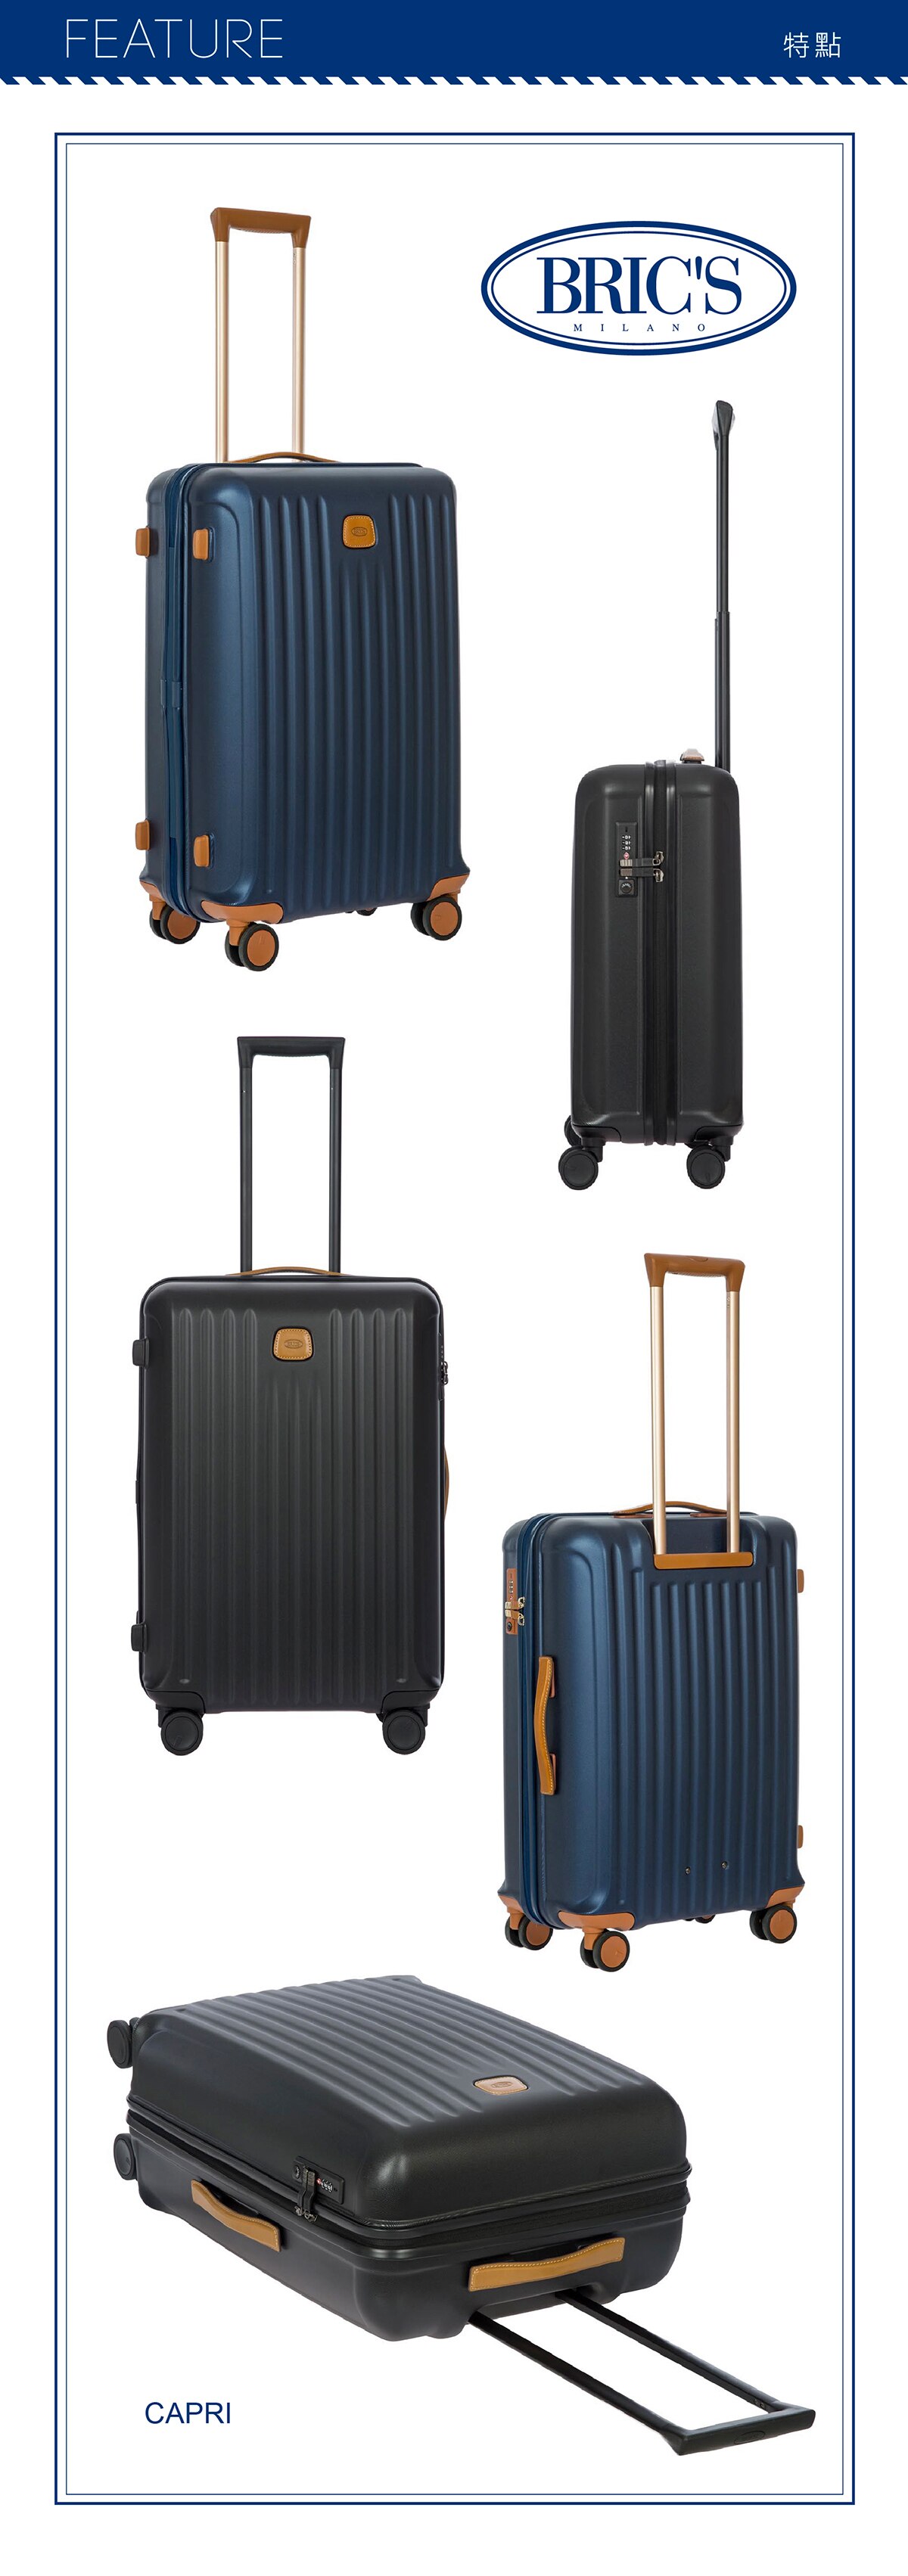 BRIC'S 27吋黑色行李箱,TSA海關安全鎖,新型的TSA海關安全密碼鎖,讓您在海外旅行也能安心輕鬆過關.